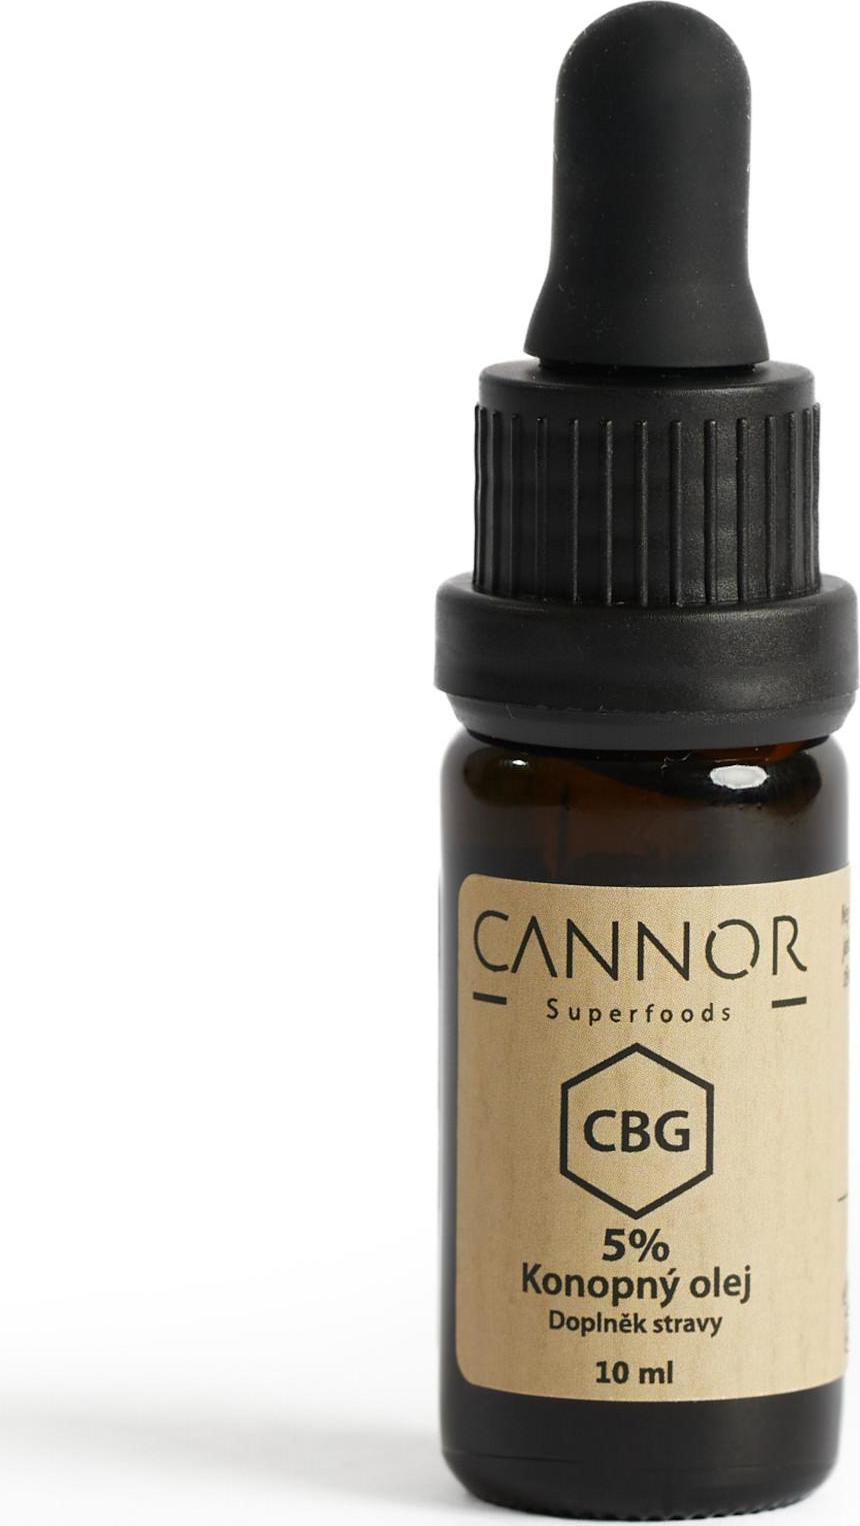 CANNOR CBG konopný olej 5% 10 ml